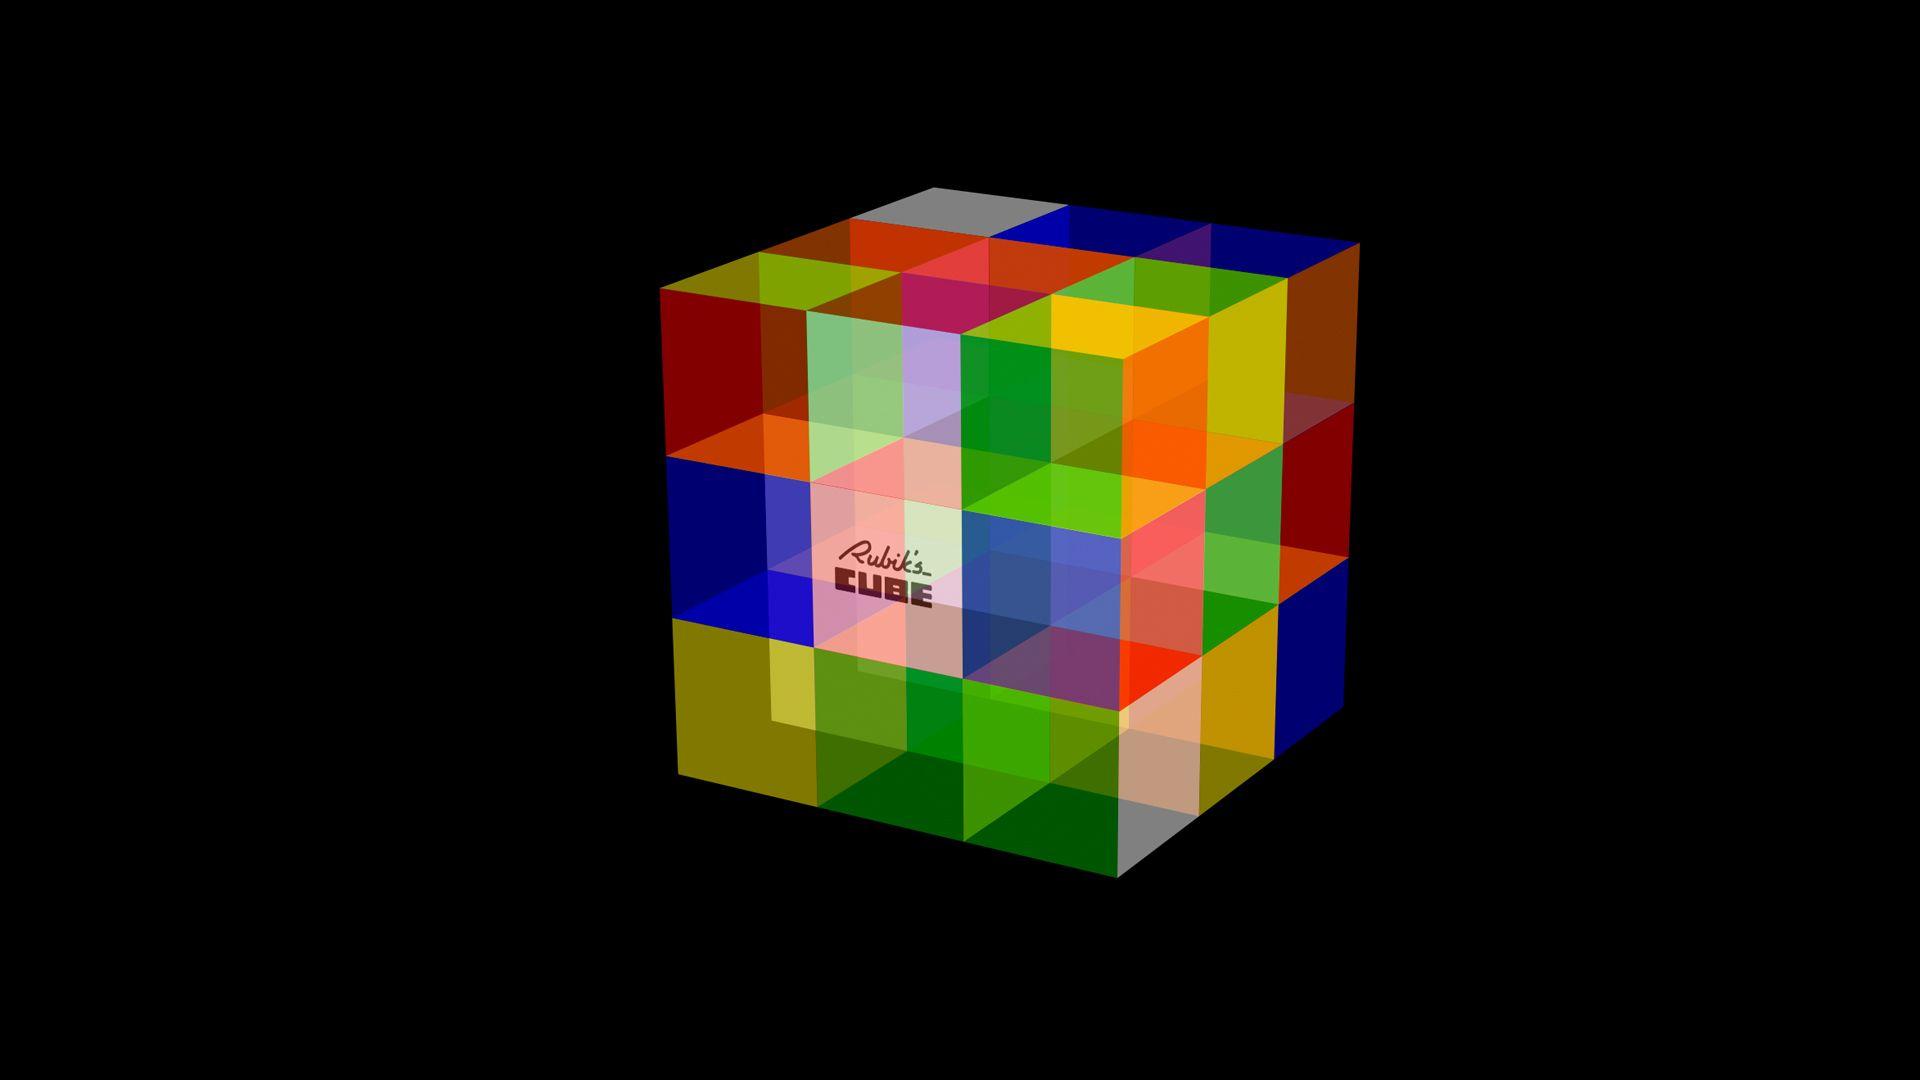 49 Rubiks Cube Wallpaper  WallpaperSafari